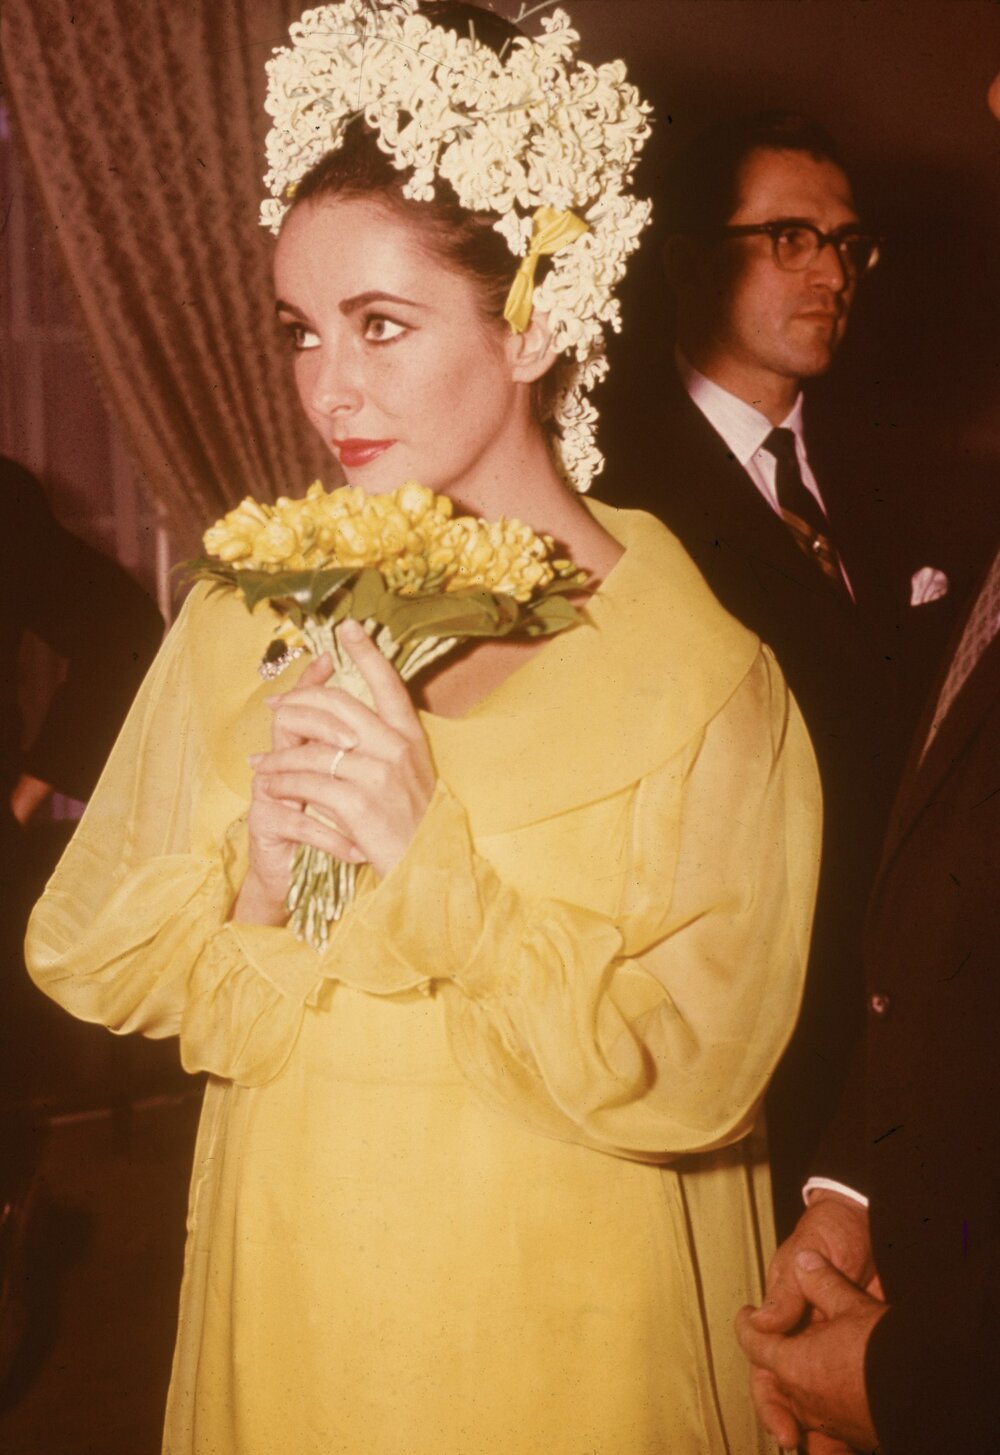 Elizabeth Taylor's 1964 wedding dress